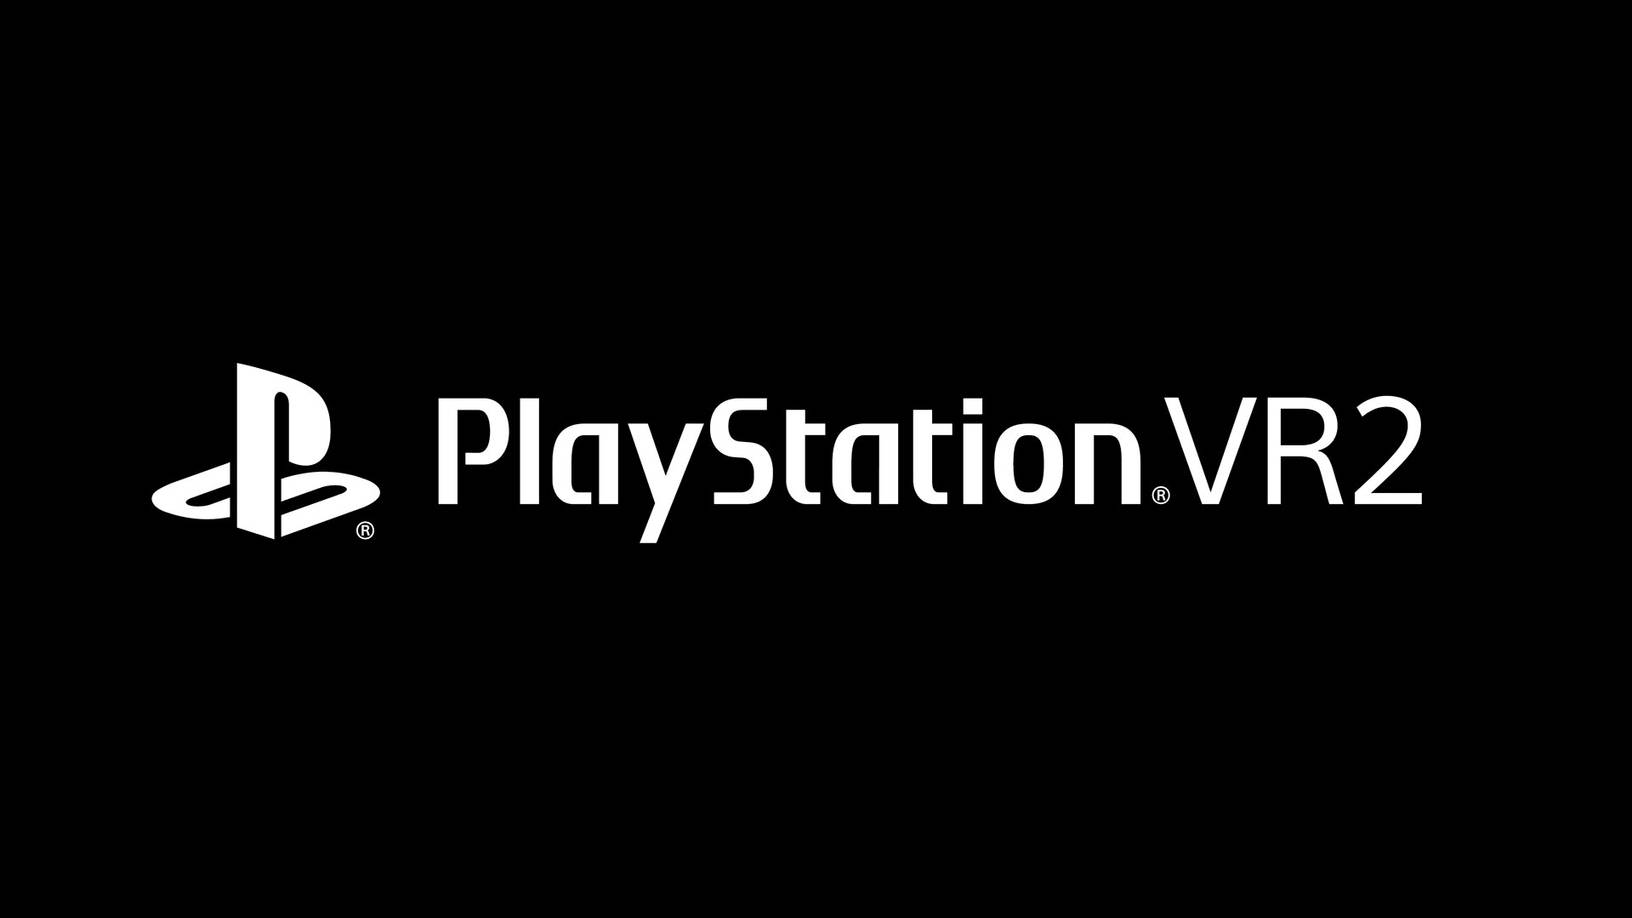 PlayStation VR2 se presenta oficialmente con Horizon Call of the Mountain y Sense controller